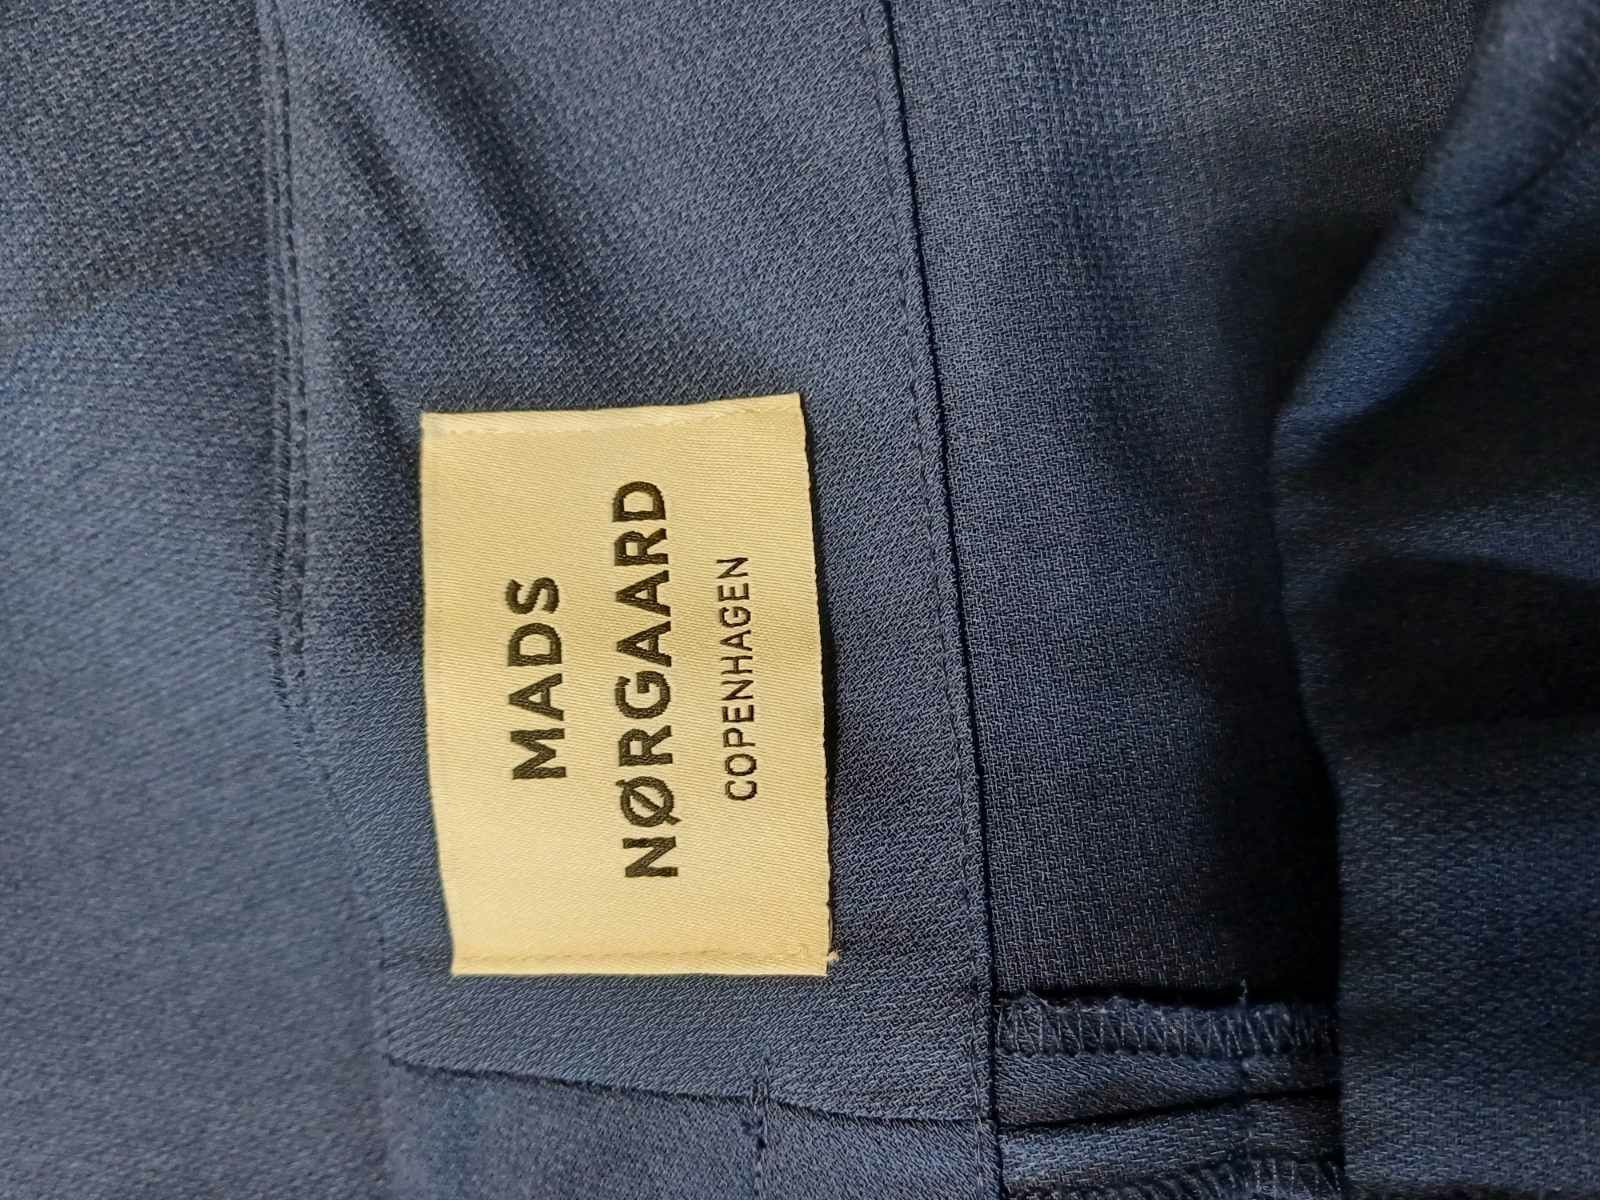 Śliczne spodnie materiałowe,szeroka nogawka Mads Nórgaard roz 38.